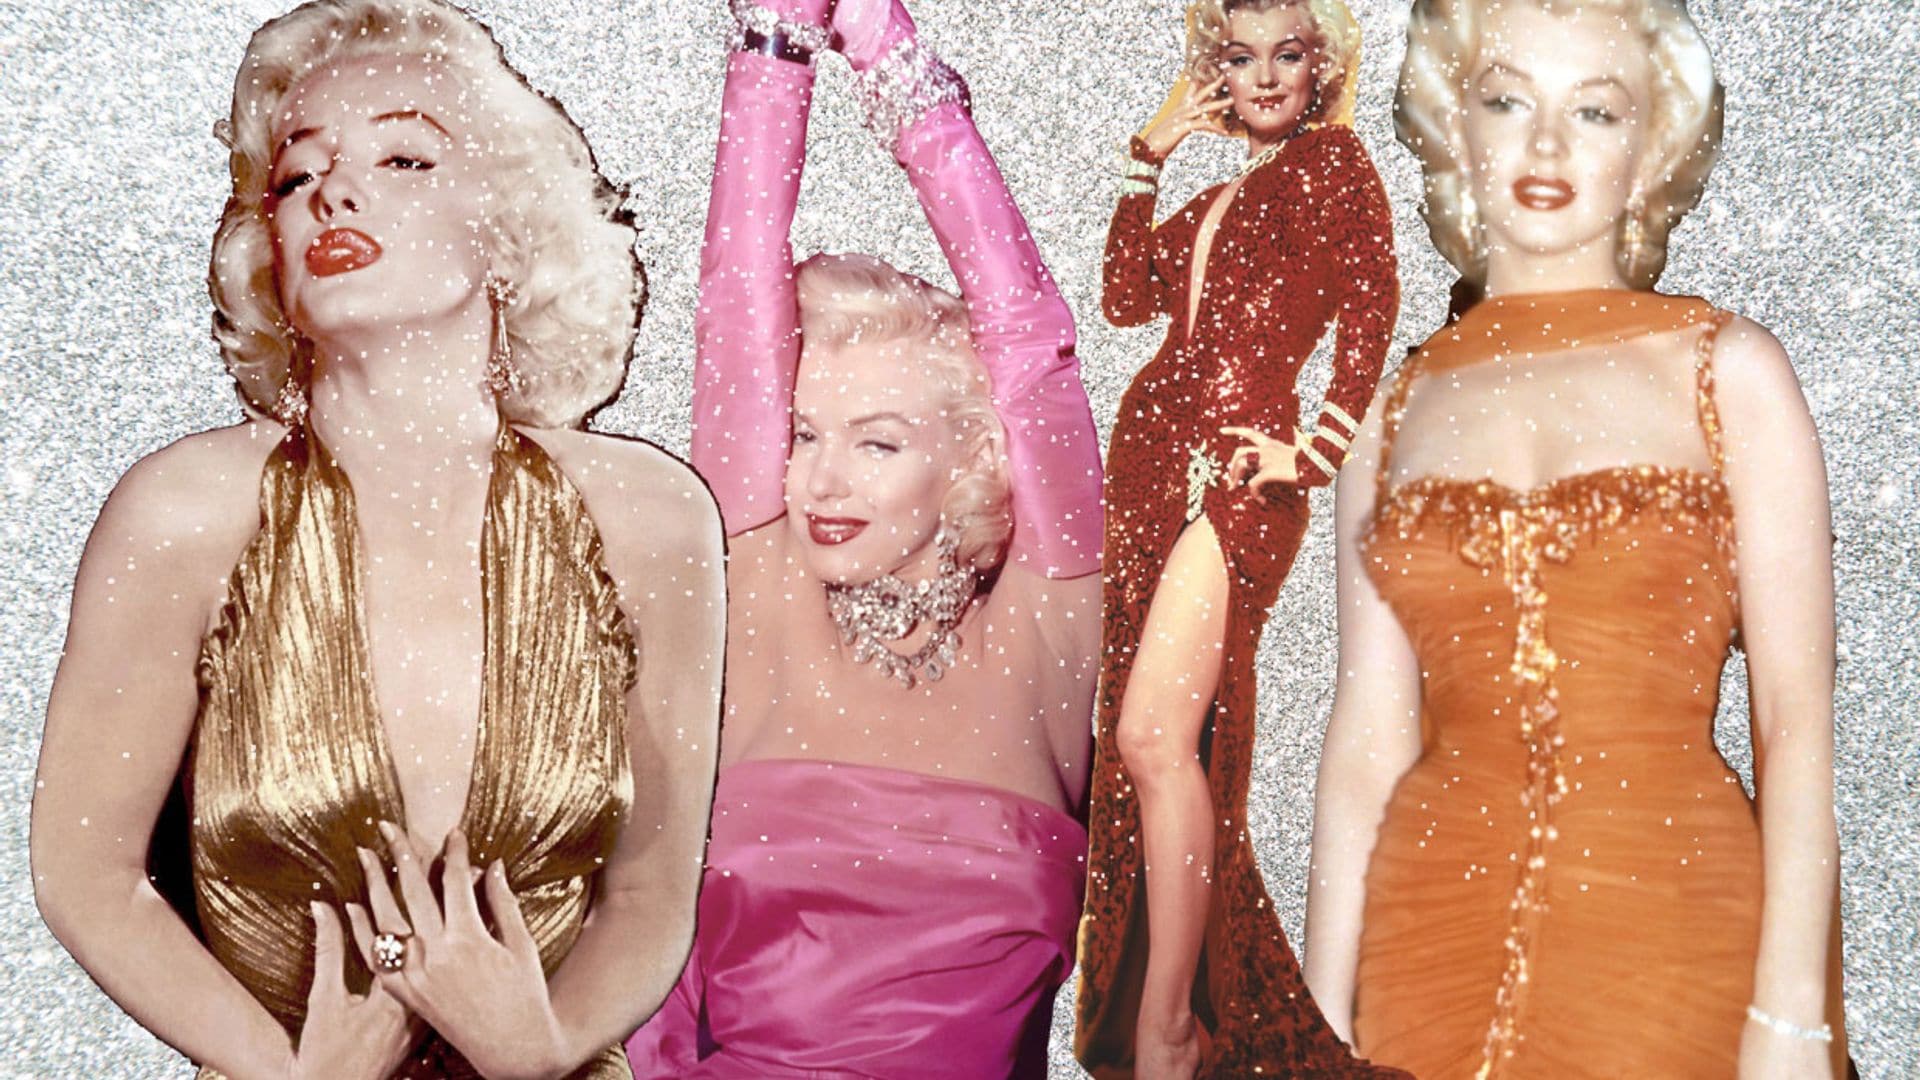 Los impresionantes vestidos de Marilyn Monroe, vuelven a ser tendencia entre las invitadas más 'chic'